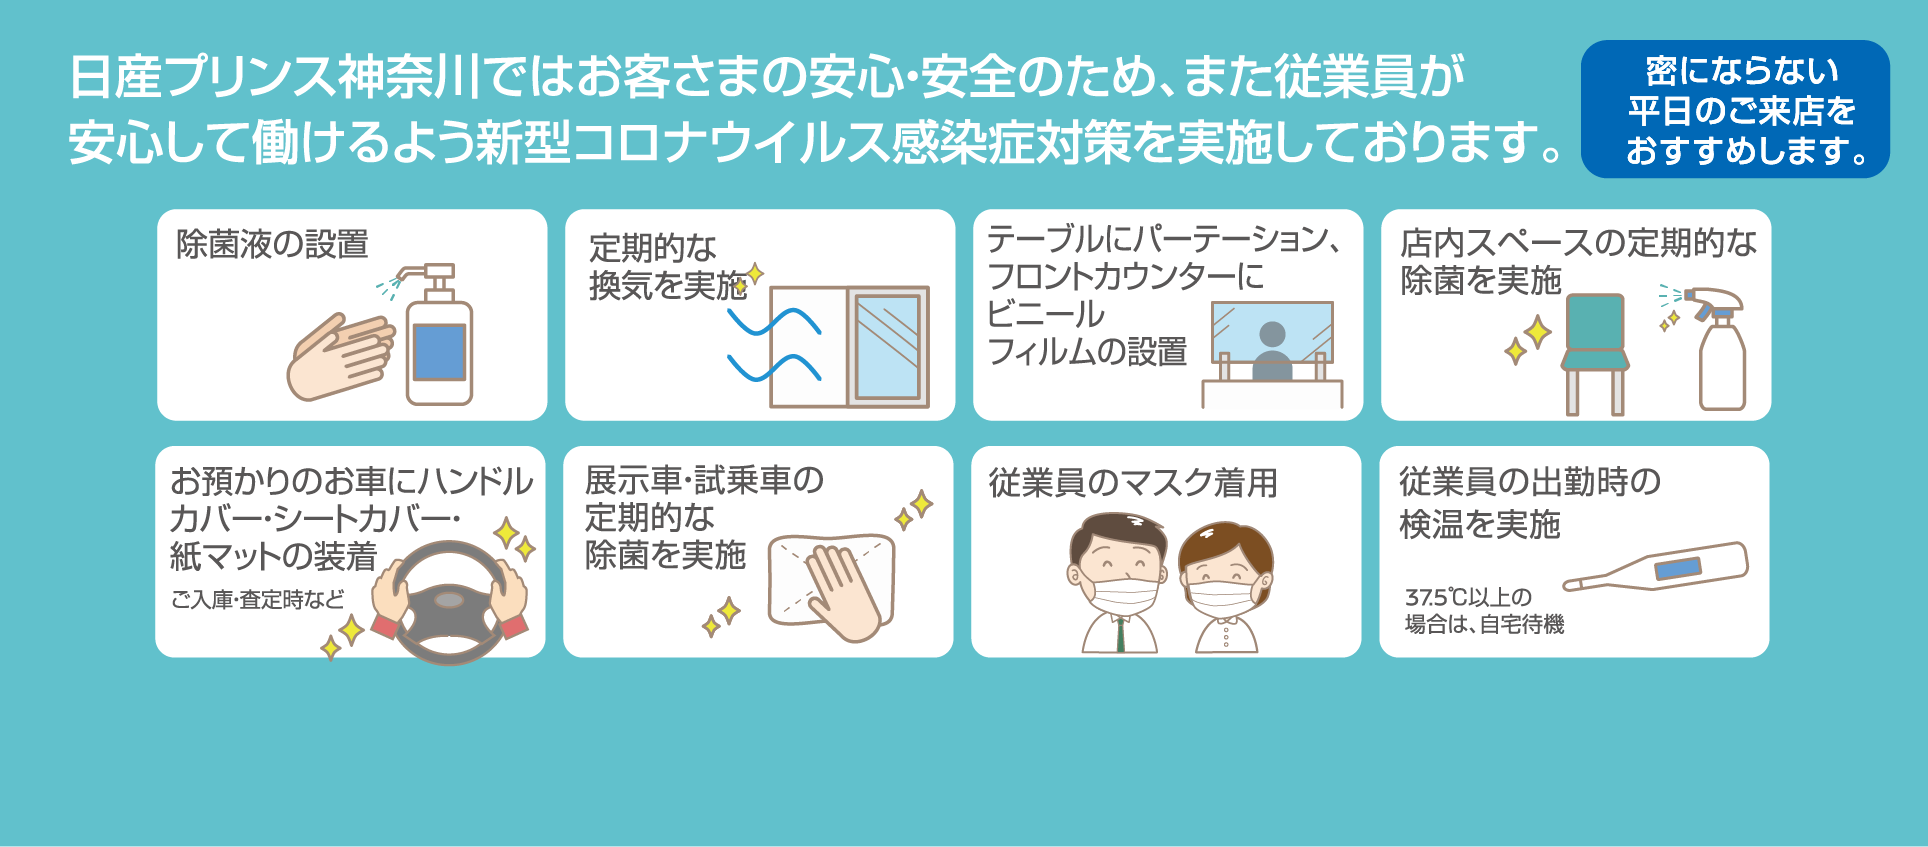 日産プリンス神奈川ではお客さまの安心・安全のため、また従業員が安心して働けるよう新型コロナウイルス感染症対策を実施しております。